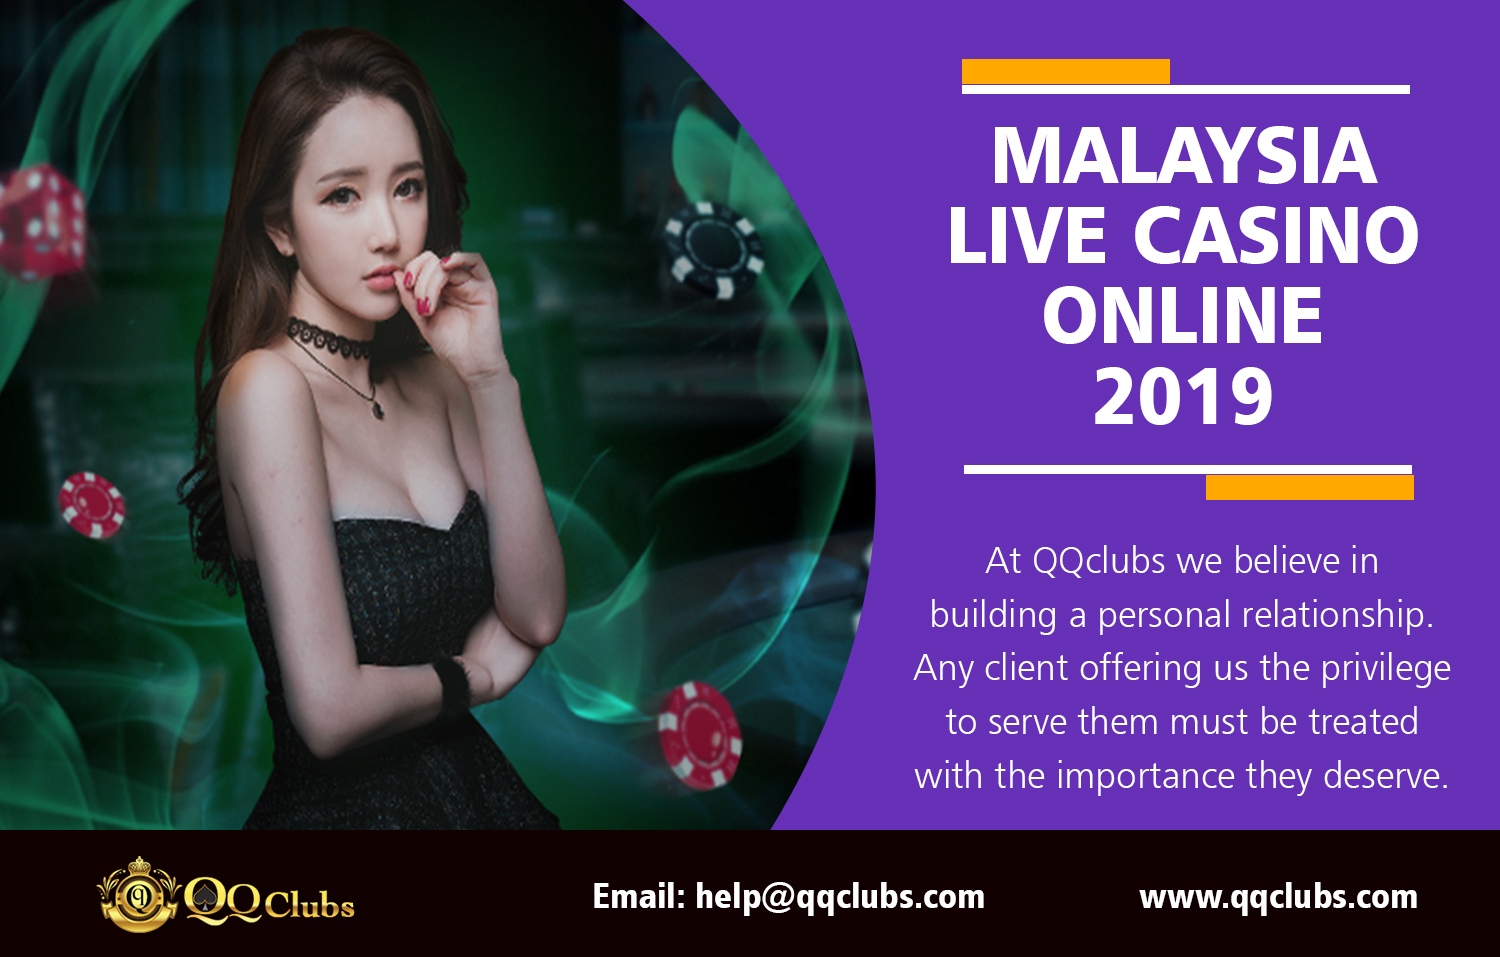 Online casino malaysia topic как скачать игровой автомат на реальные деньги